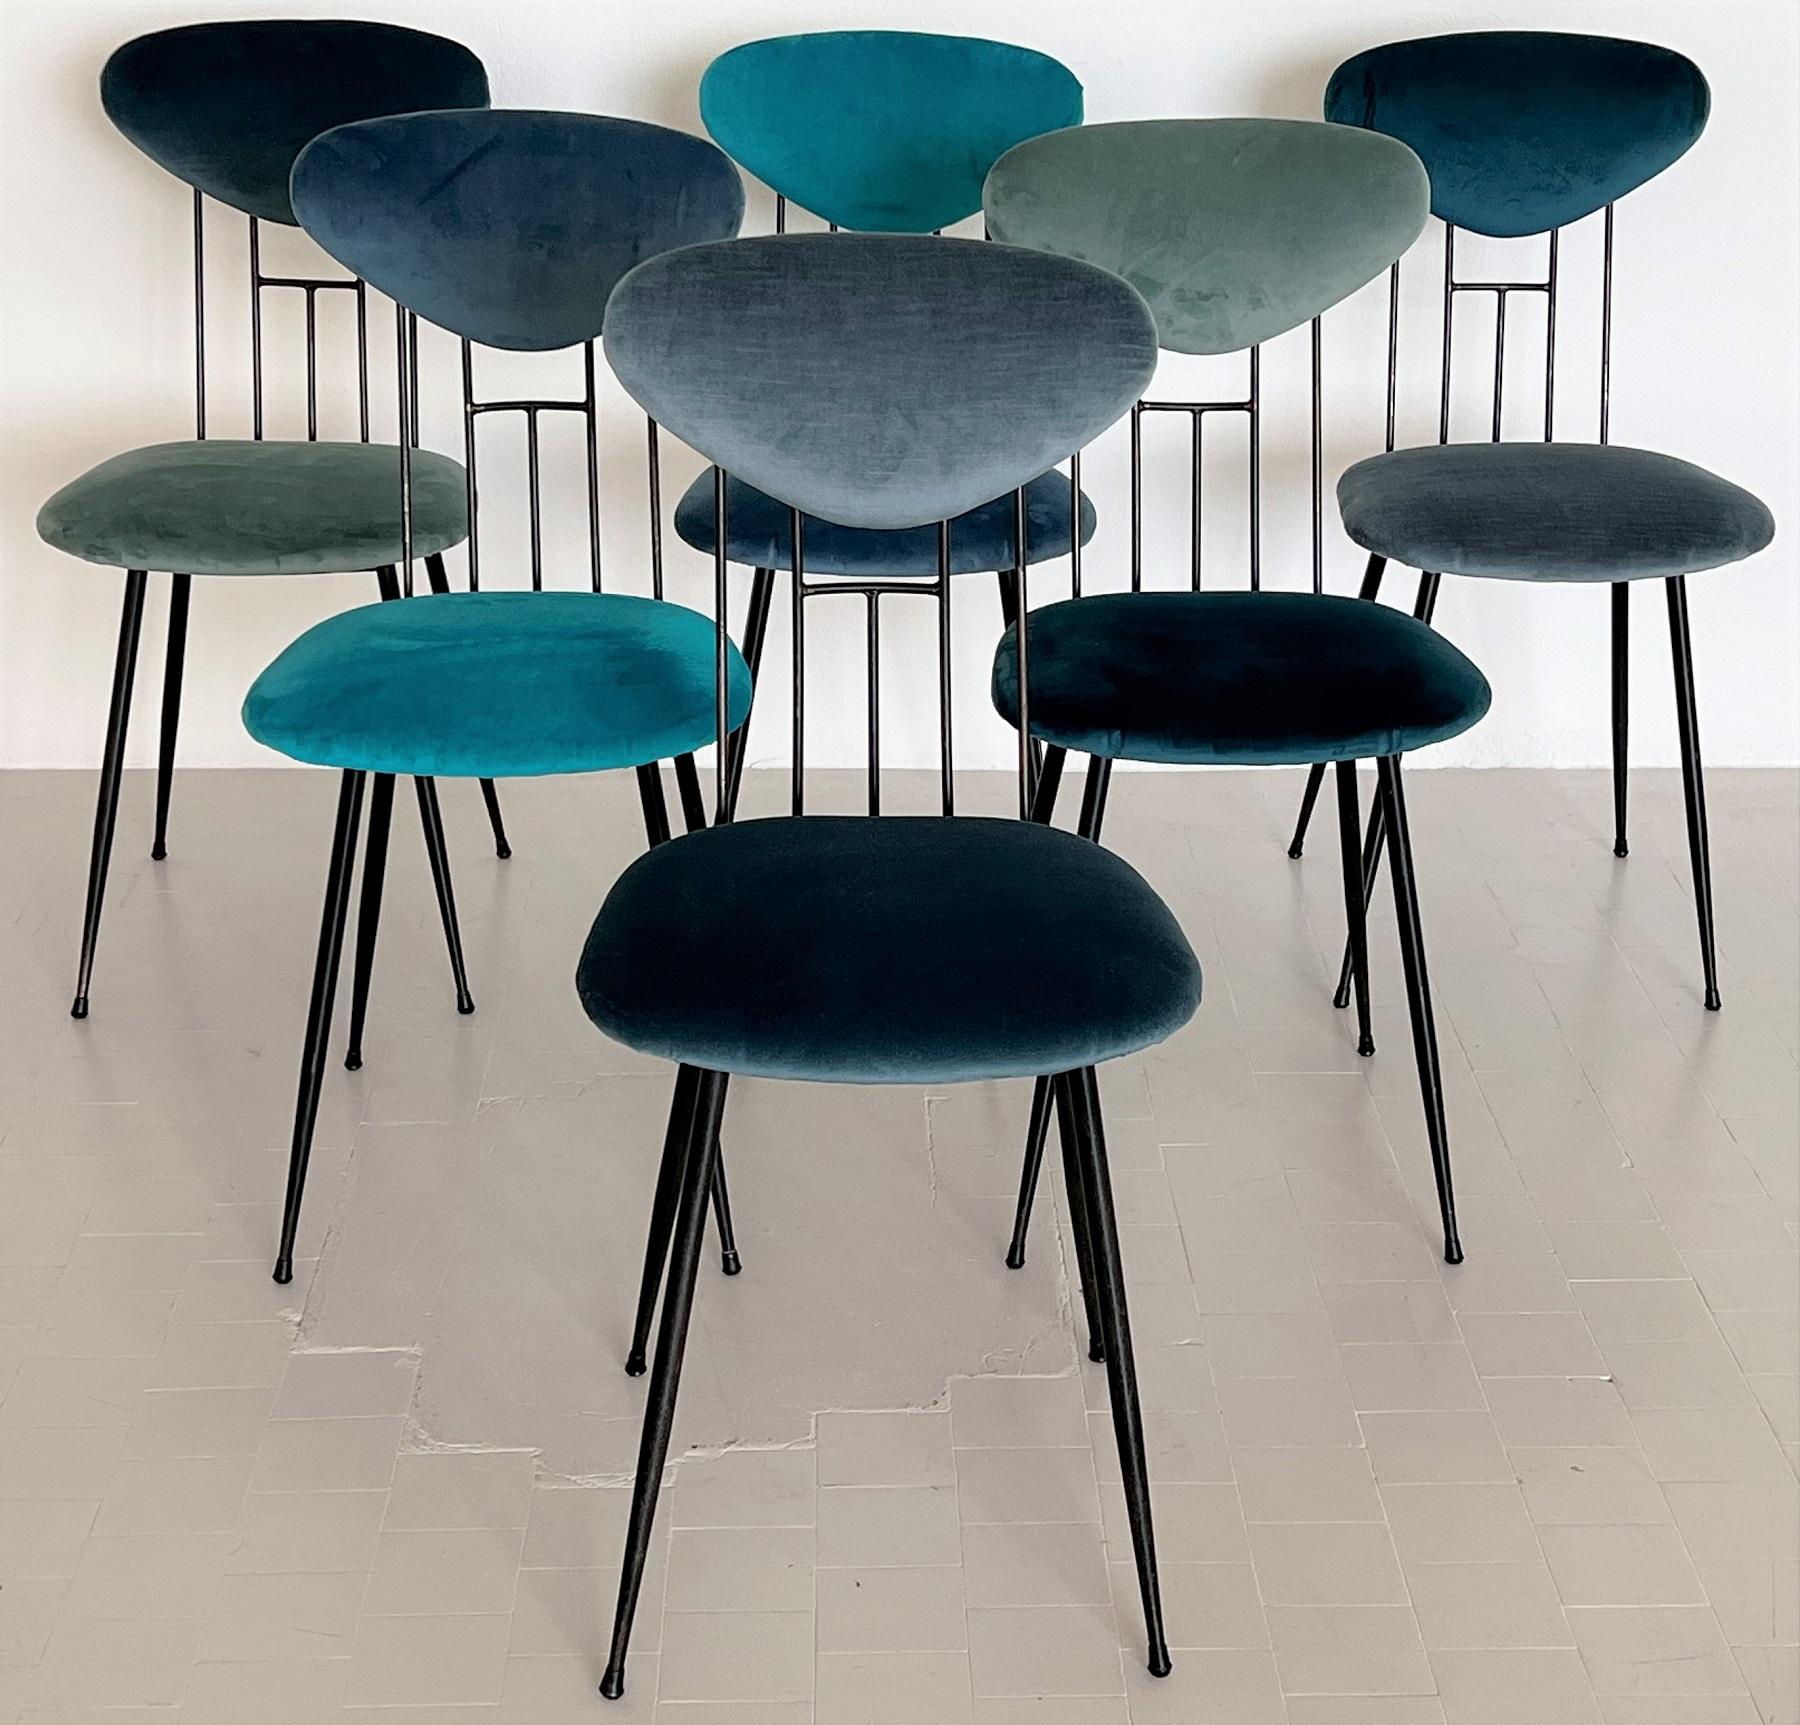 Italian Midcentury Dining Room Chairs Re-Upholstered in Velvet, 1960s For Sale 5